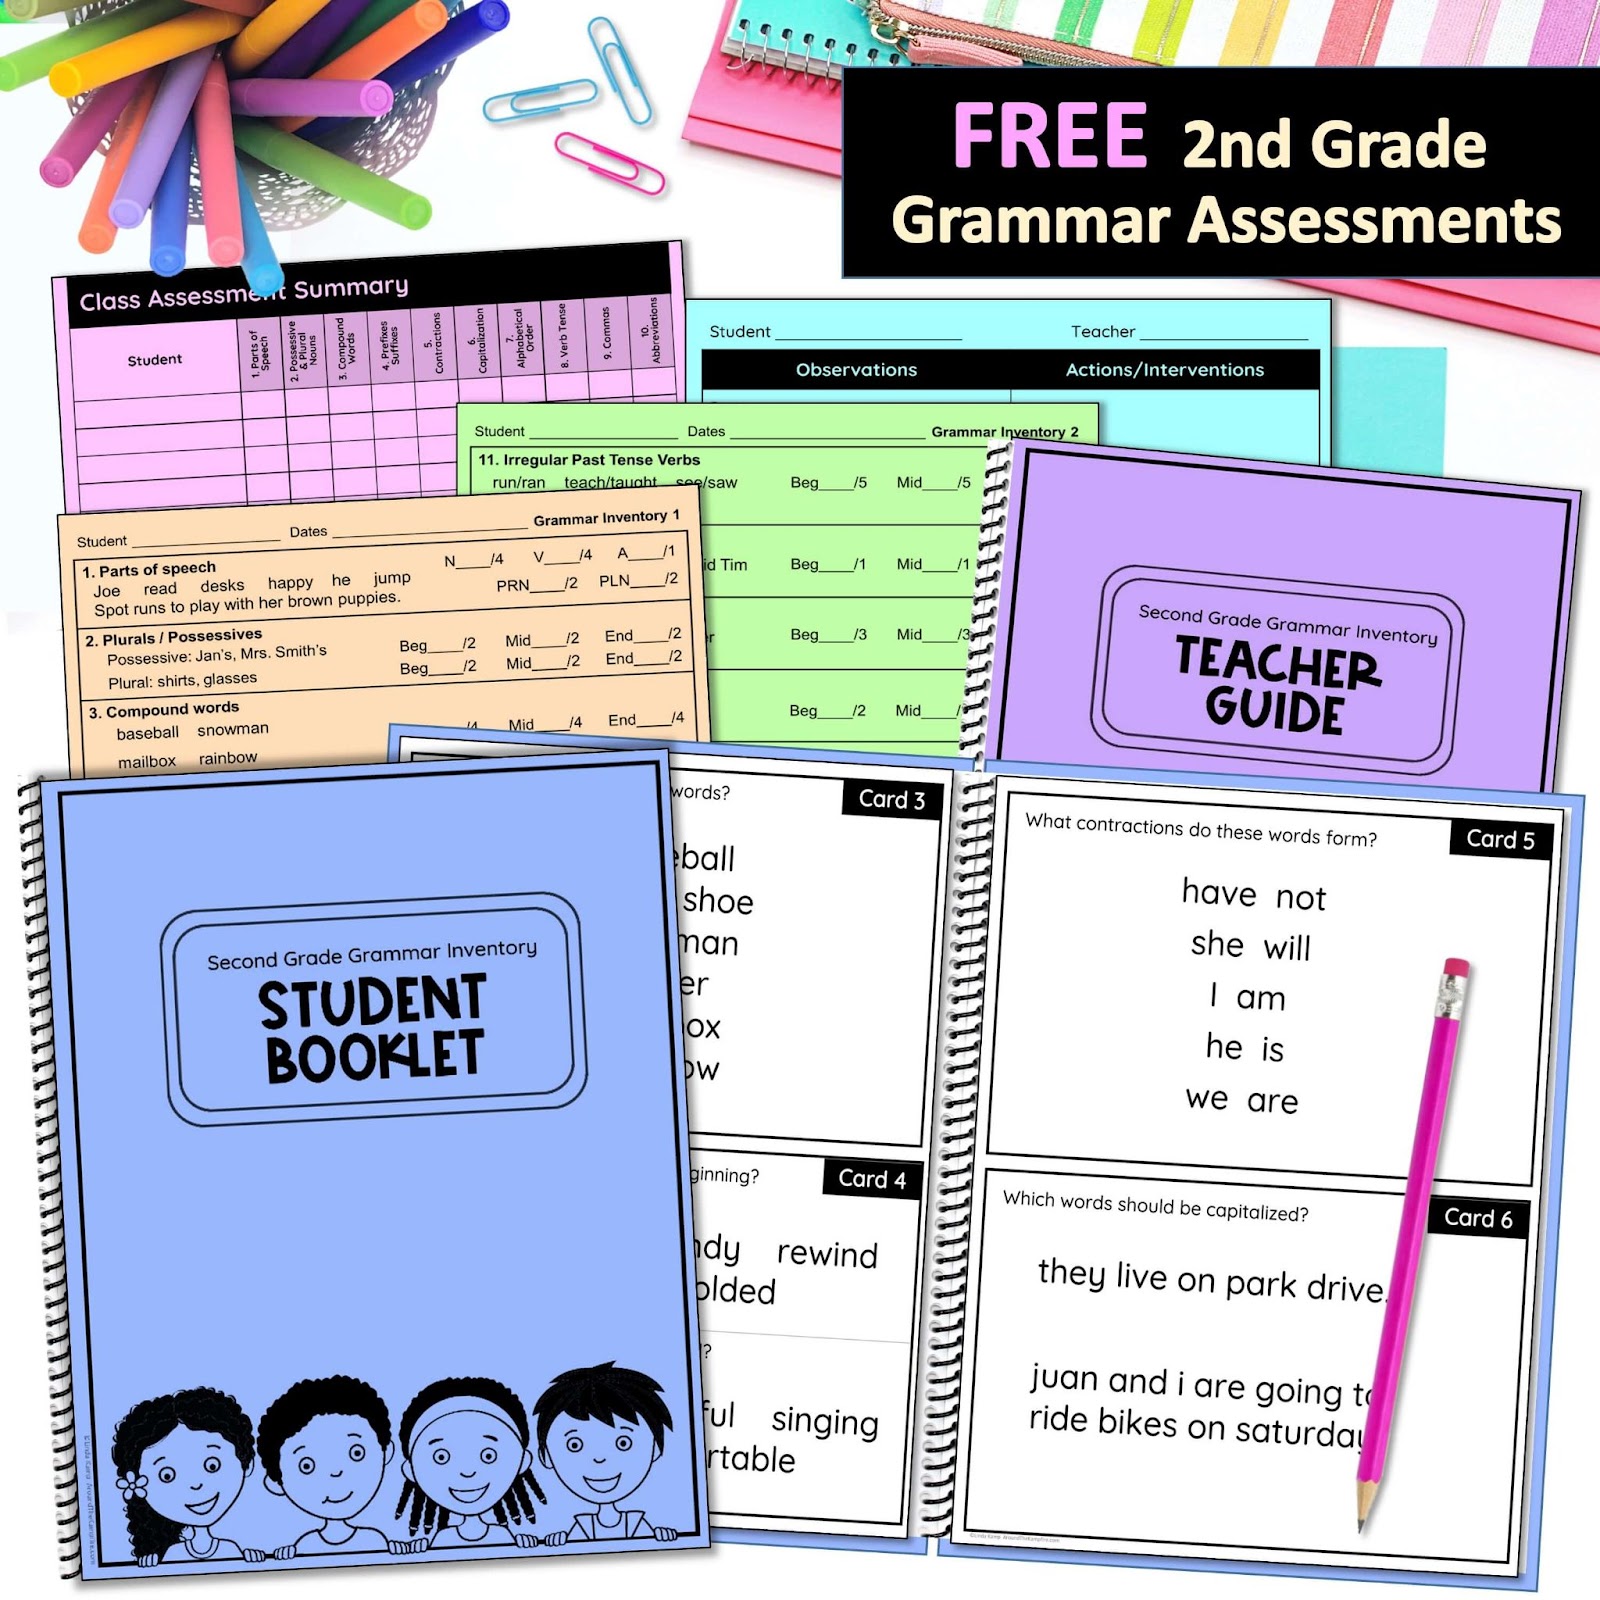 Free 2nd Grade Grammar Assessments